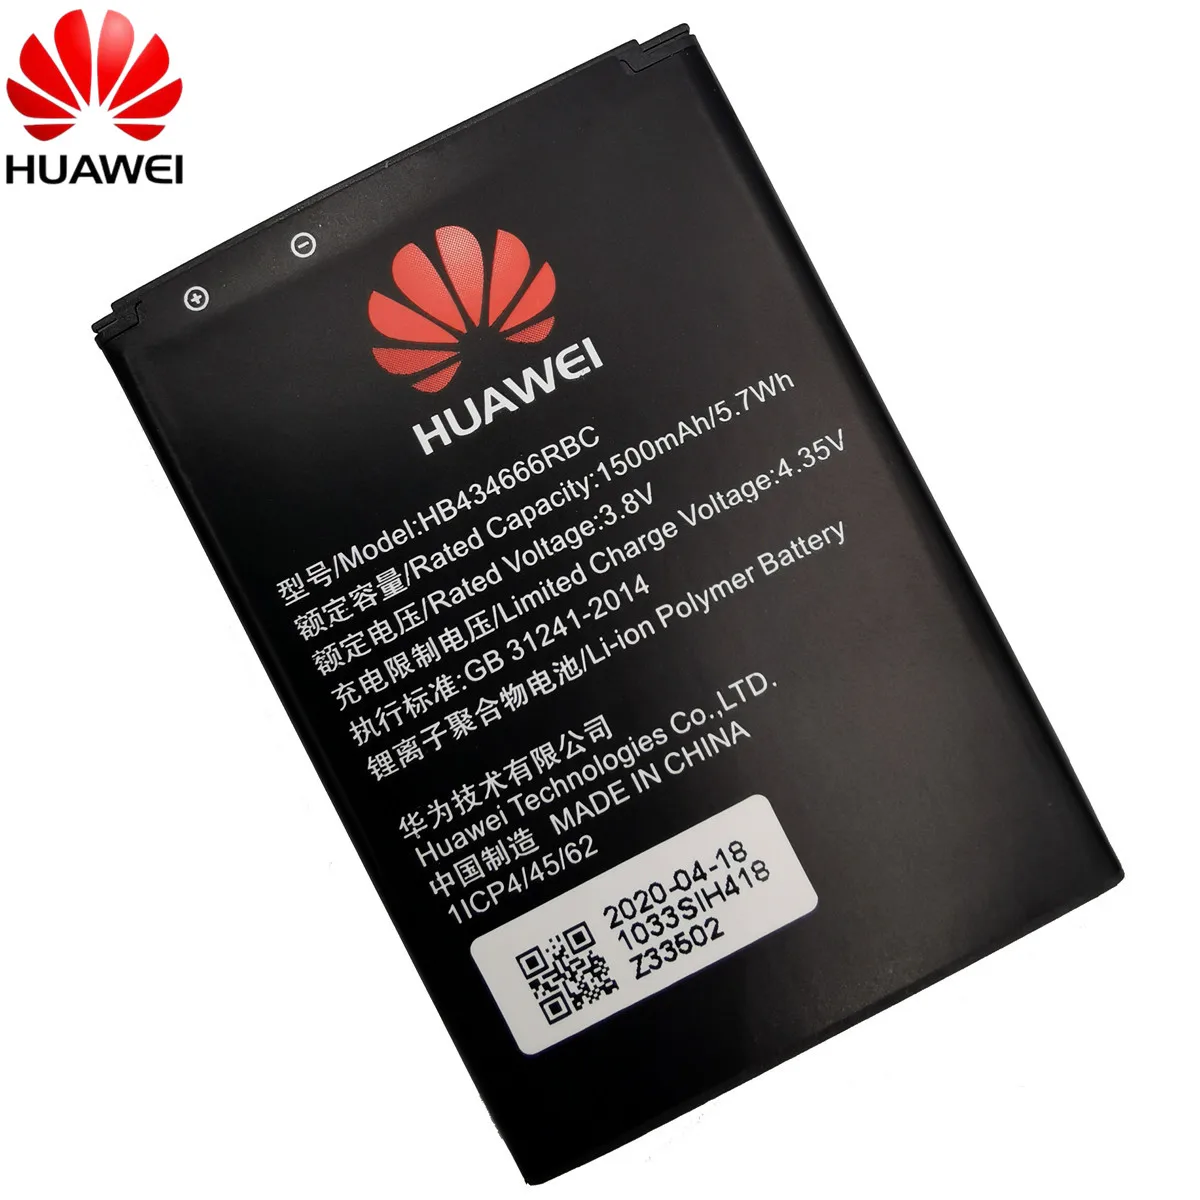 Originalą Huawei HB434666RBC telefono baterija Huawei E5573 E5573S E5573s-32 E5573s-320 E5573s-606 E5573s-806 maršrutizatorius baterija